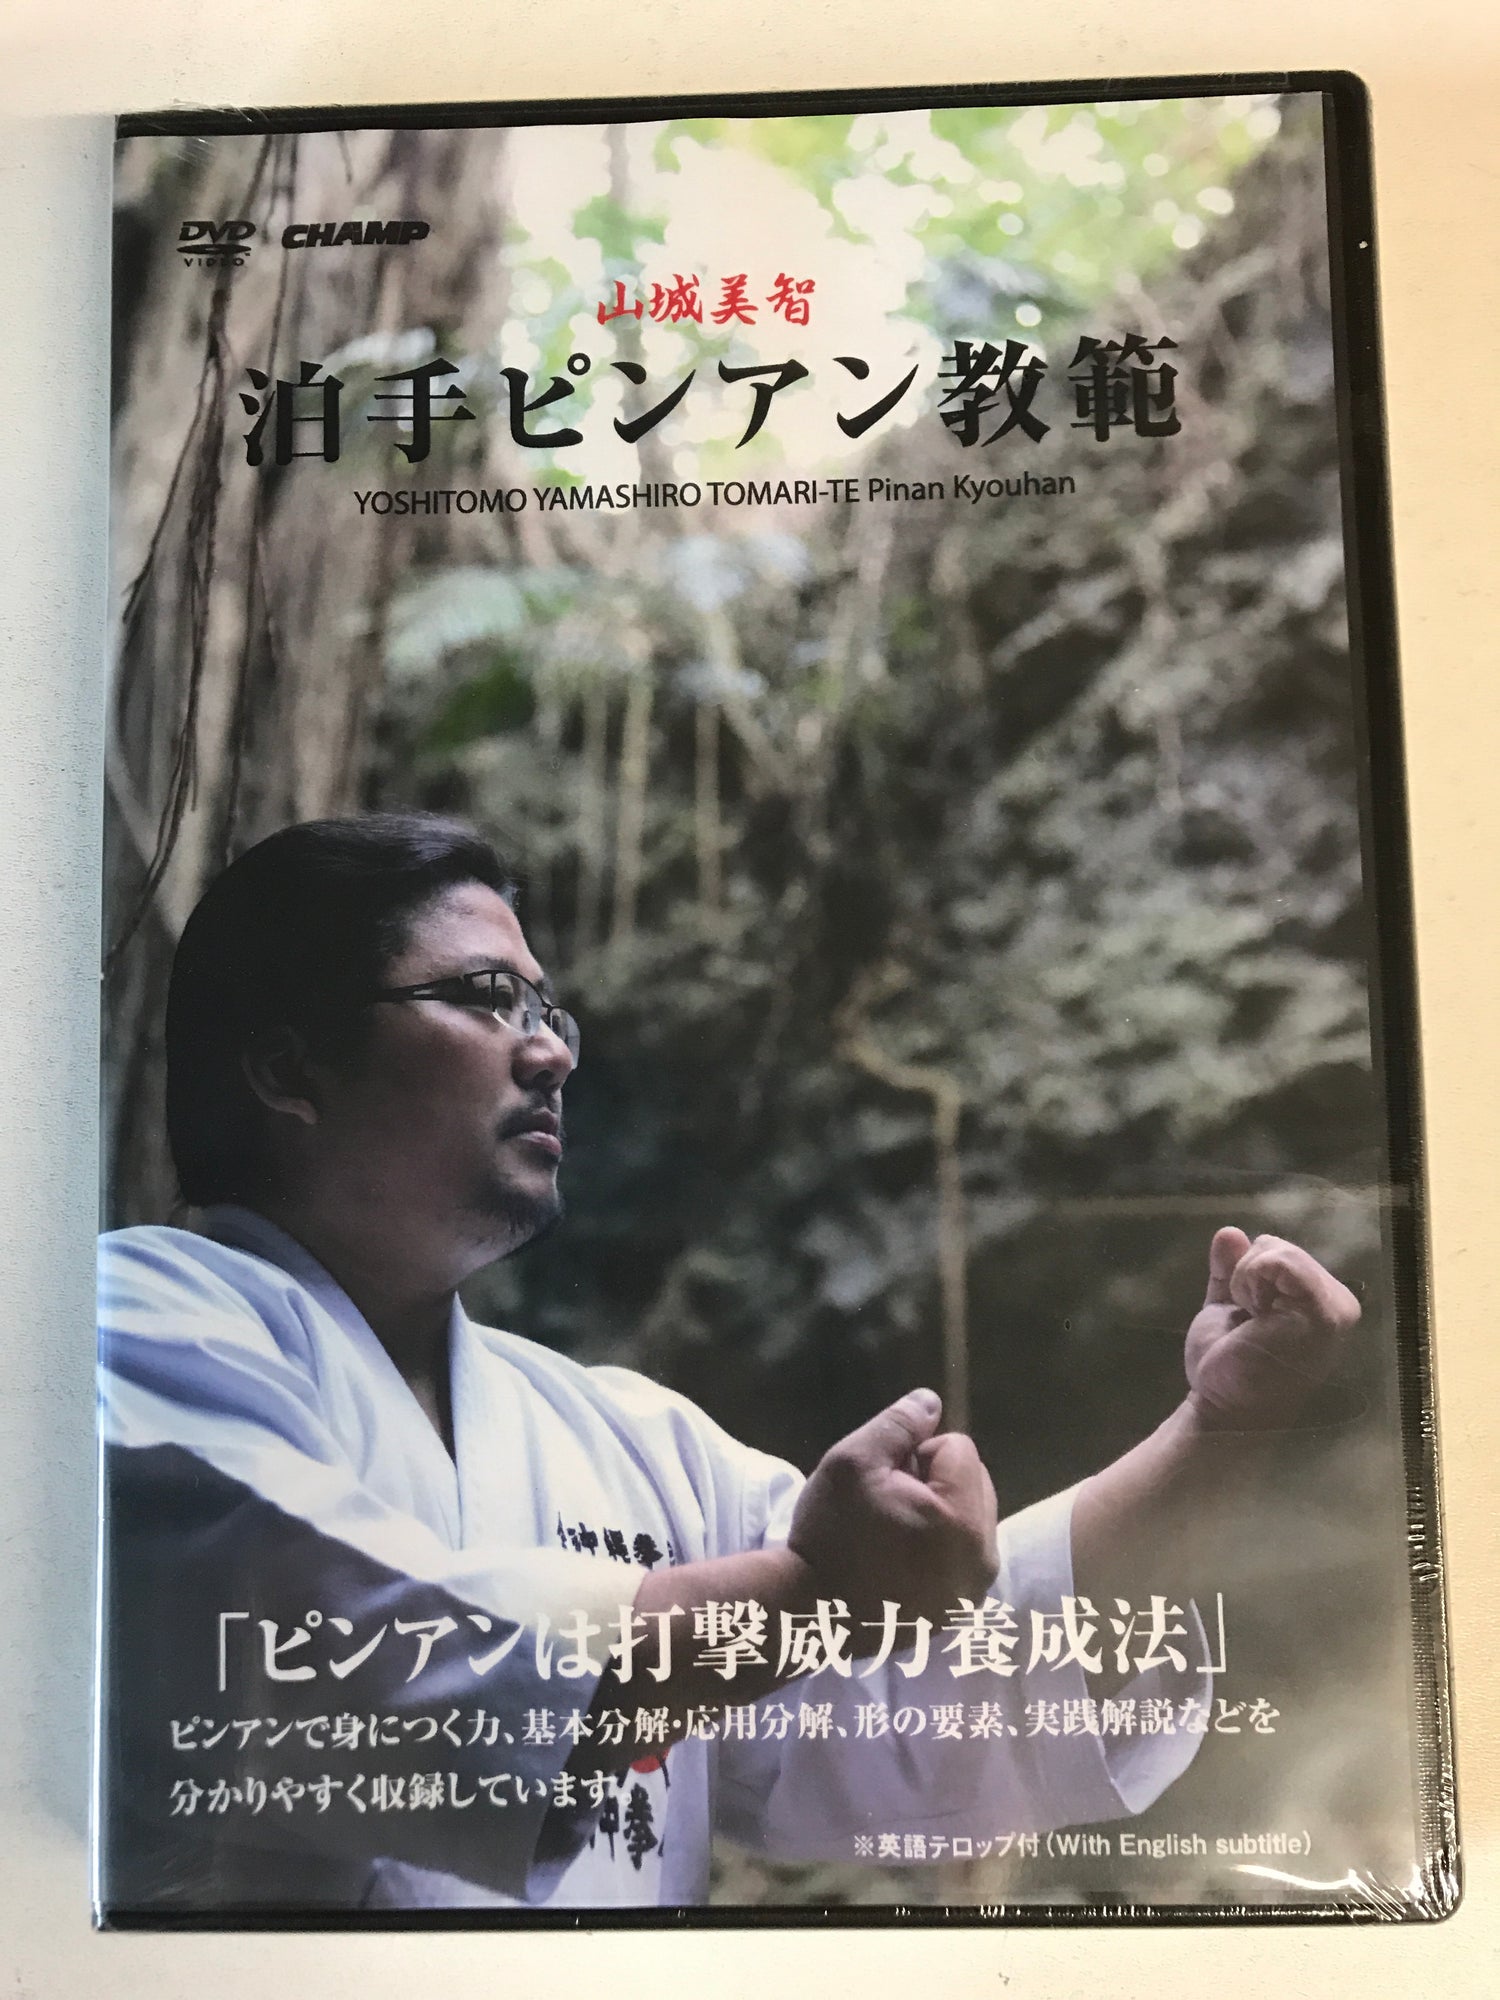 TOMARI-TE Pinan Kyouhan DVD by Yoshitomo Yamashiro - Budovideos Inc